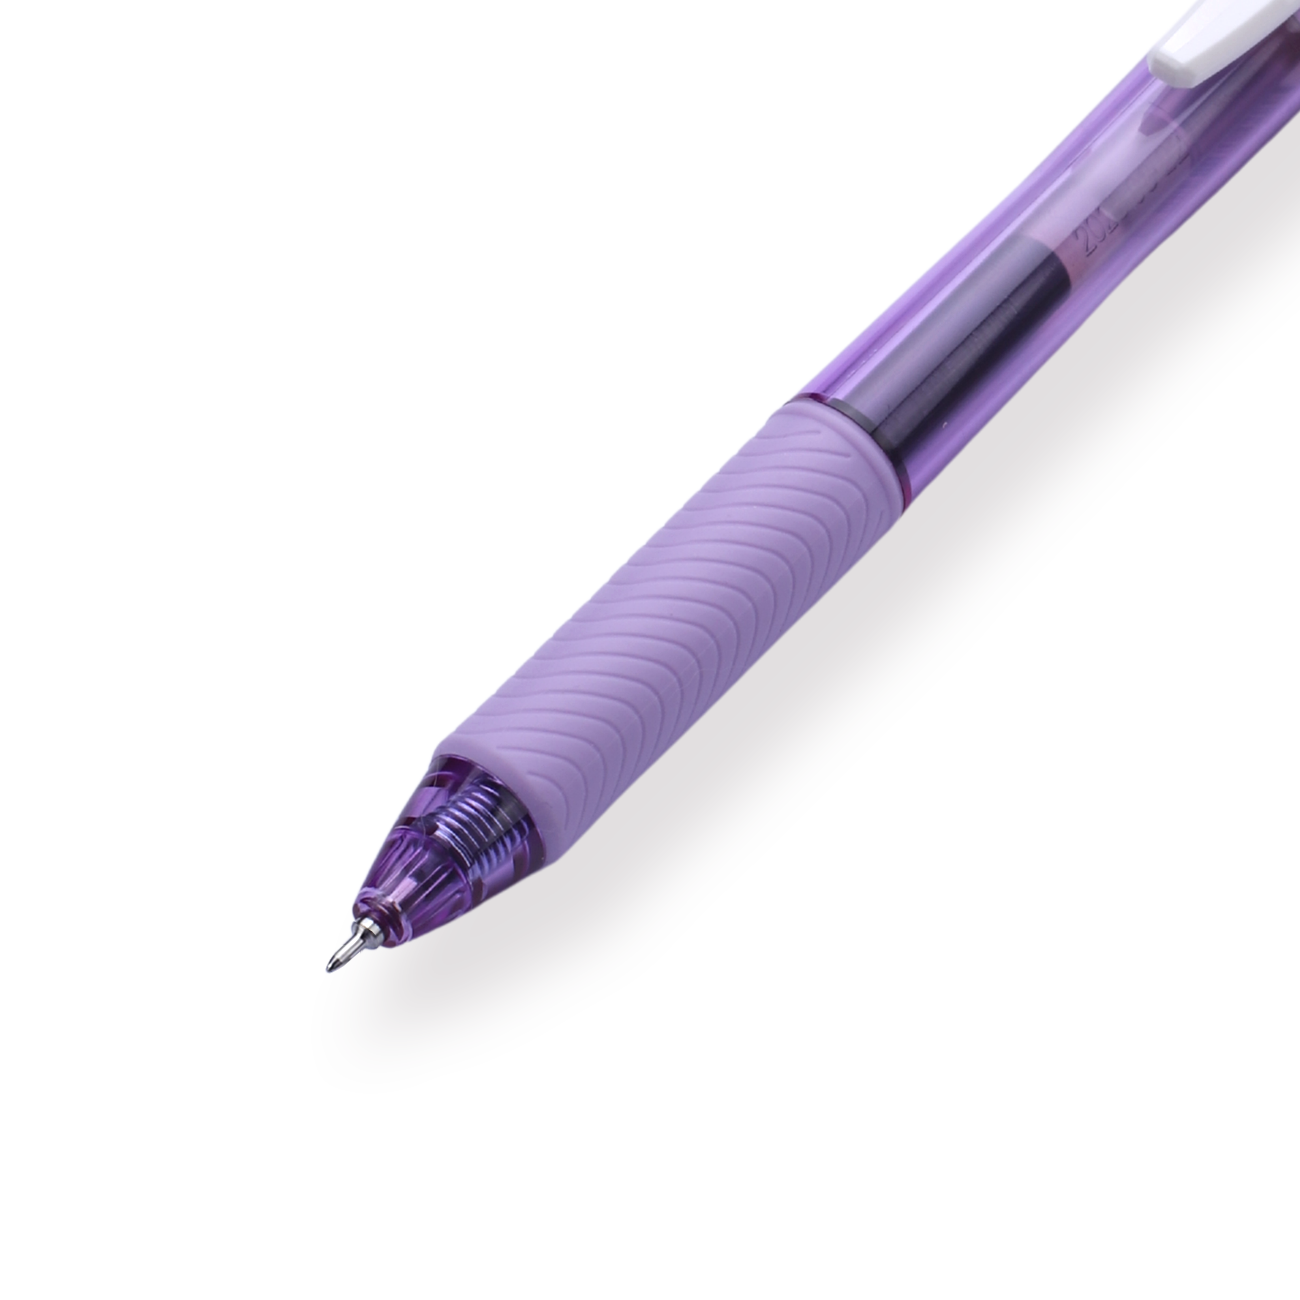 Pentel EnerGel-X Gel Pen - Needle-Point - 0.5 mm - Black (Purple Body)